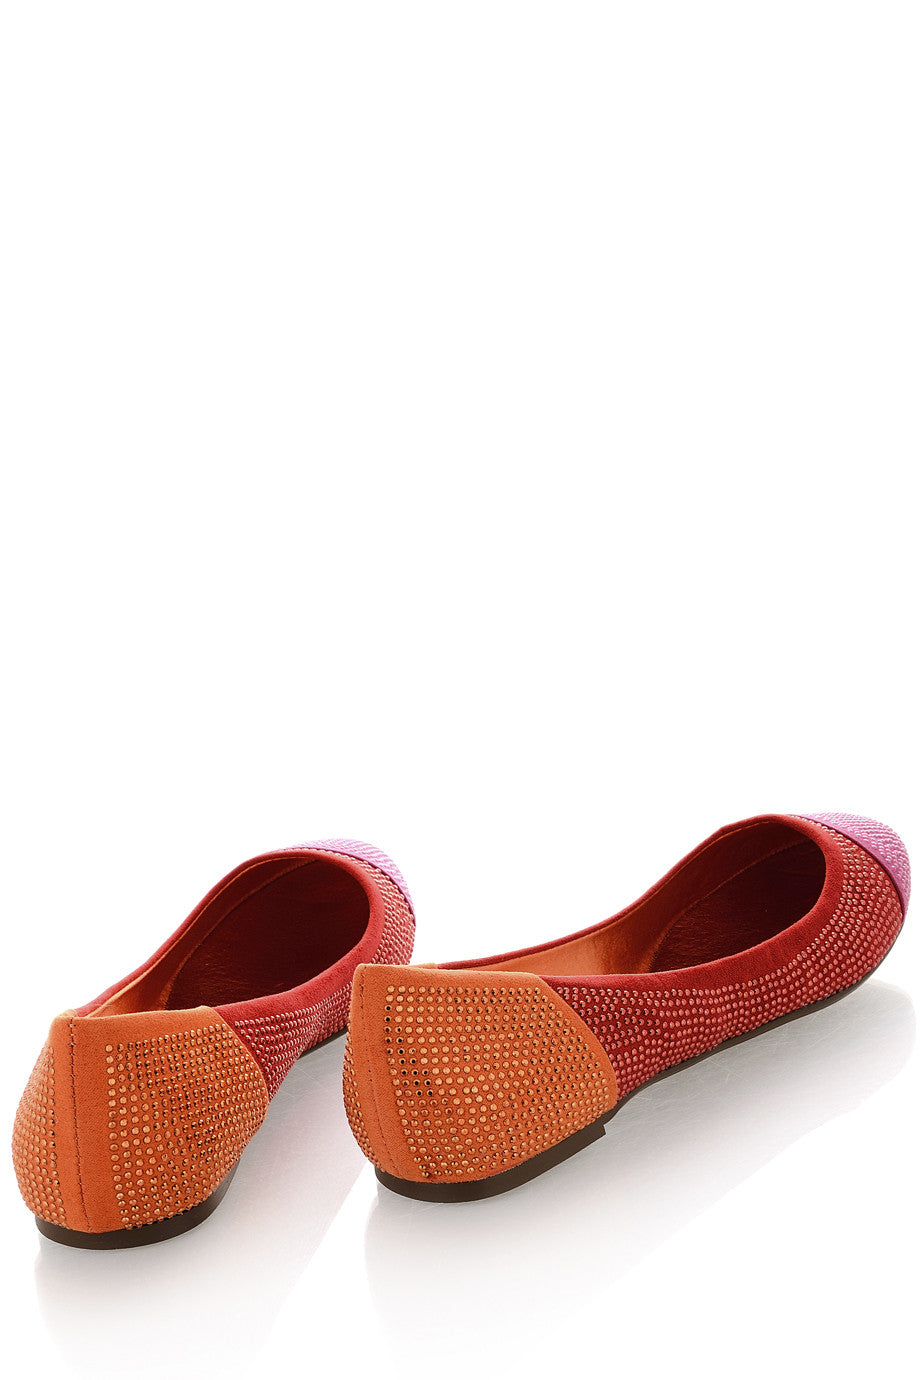 Κόκκινες Φούξια Μπαλαρίνες - Blink | Γυναικεία Παπούτσια